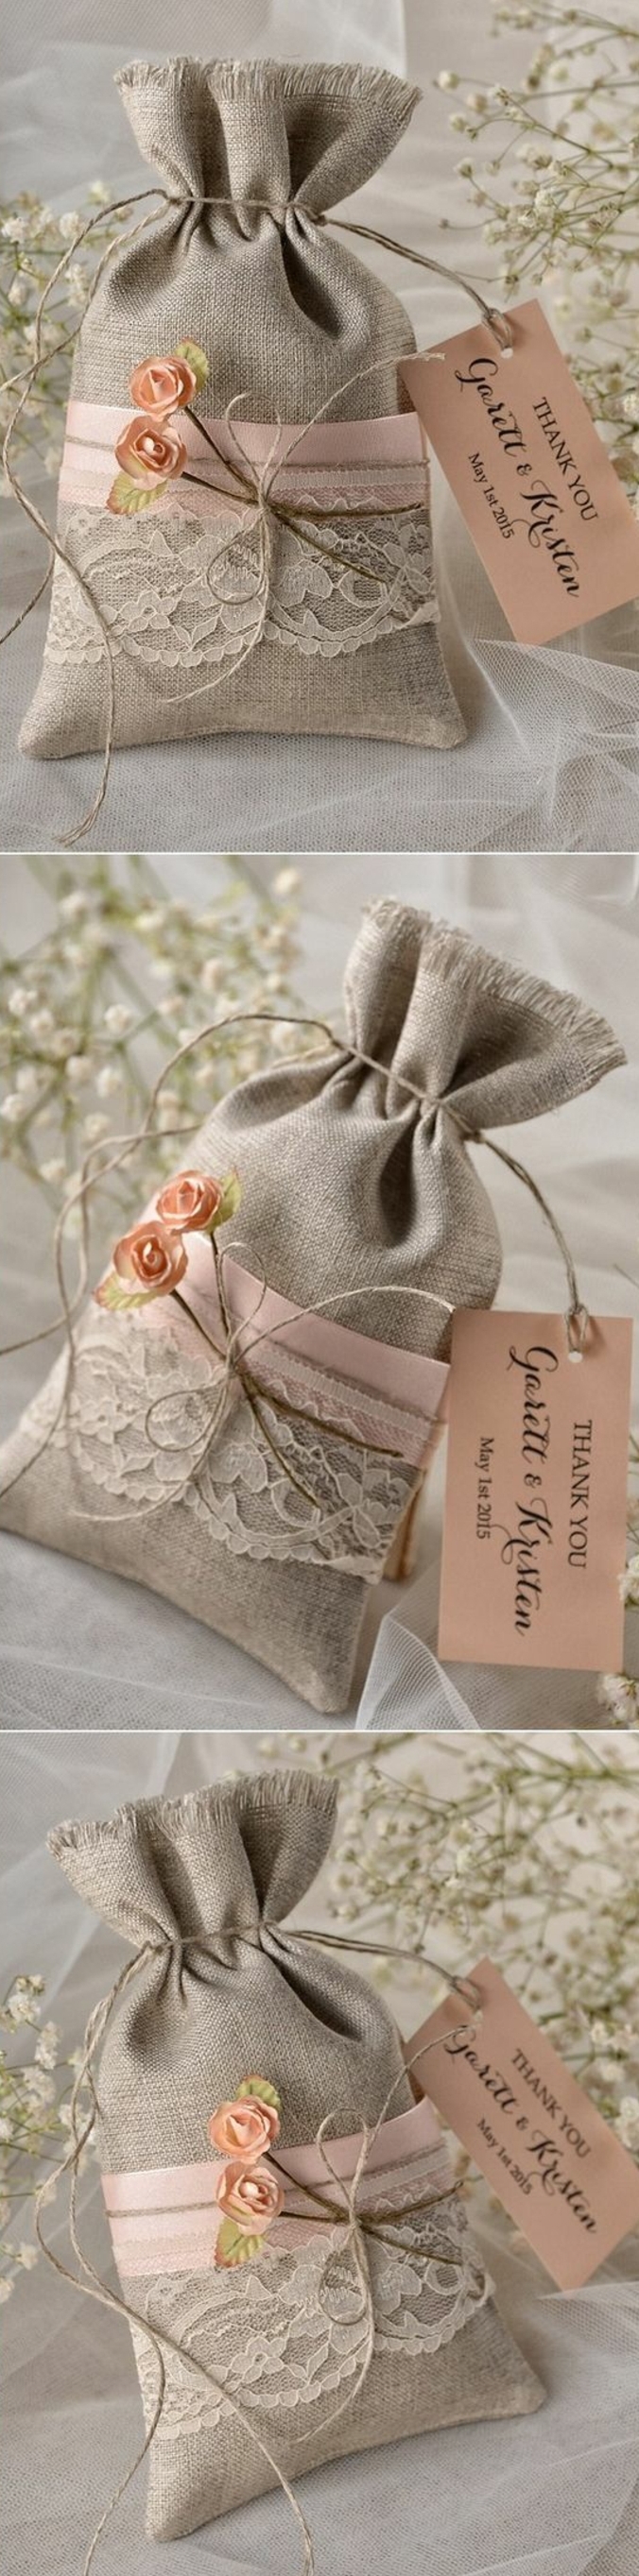 comment faire un cadeau invité mariage, petits sacs en toile de jute, customisés de ruban rose et dentelle blanche vintage, étiquette rose